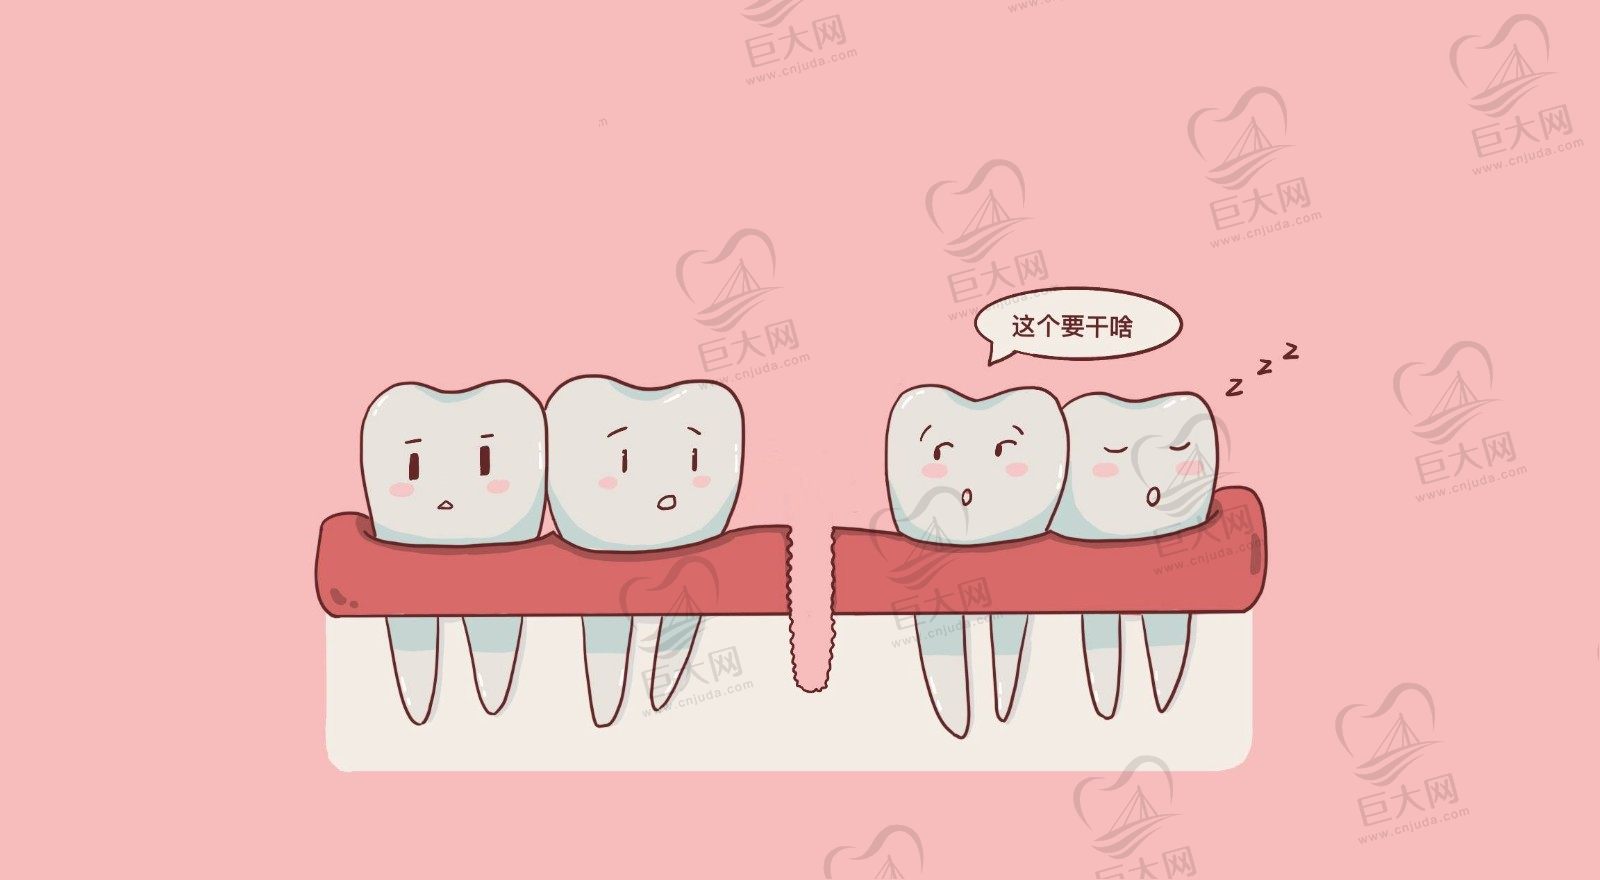 北京做种植牙的口腔医院,排行榜前五名推荐,院内优势,资料,评价分享!